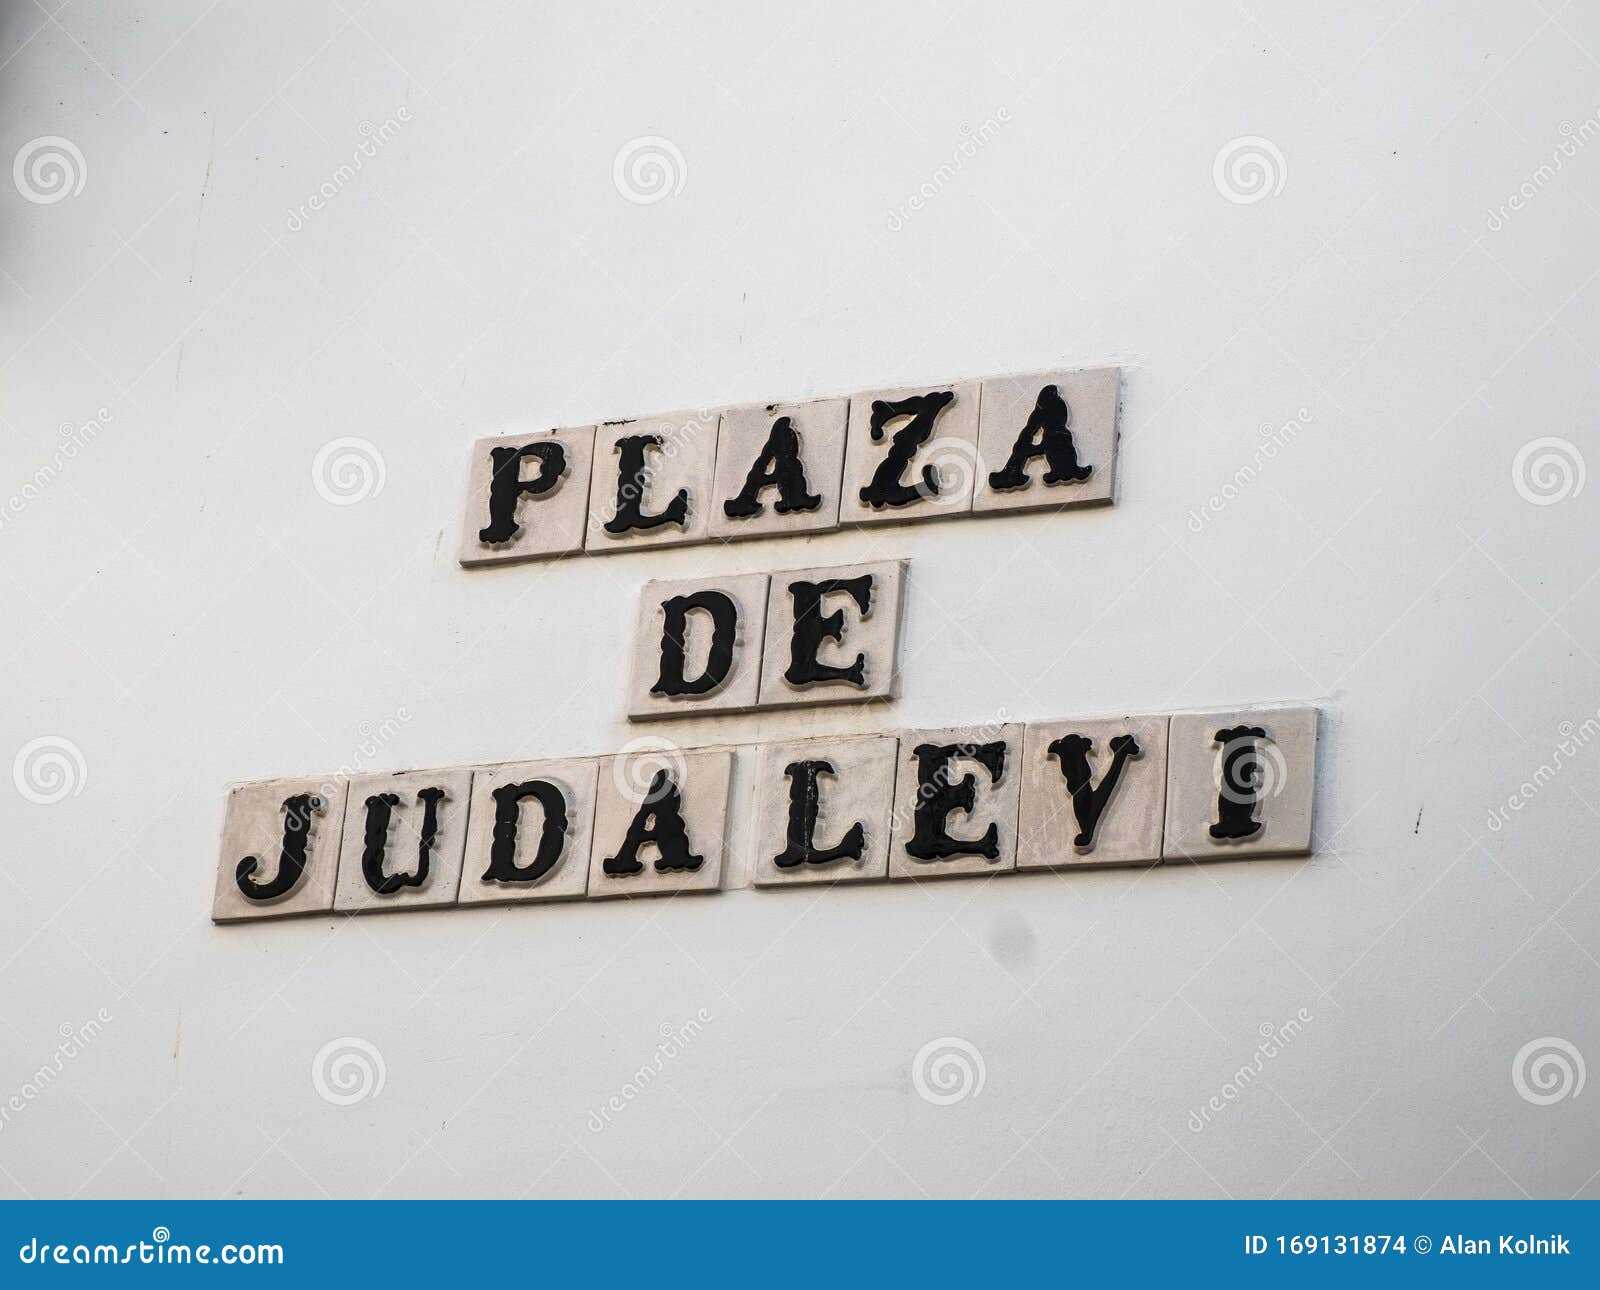 plaque honoring juda levi in cordoba, spain, espana